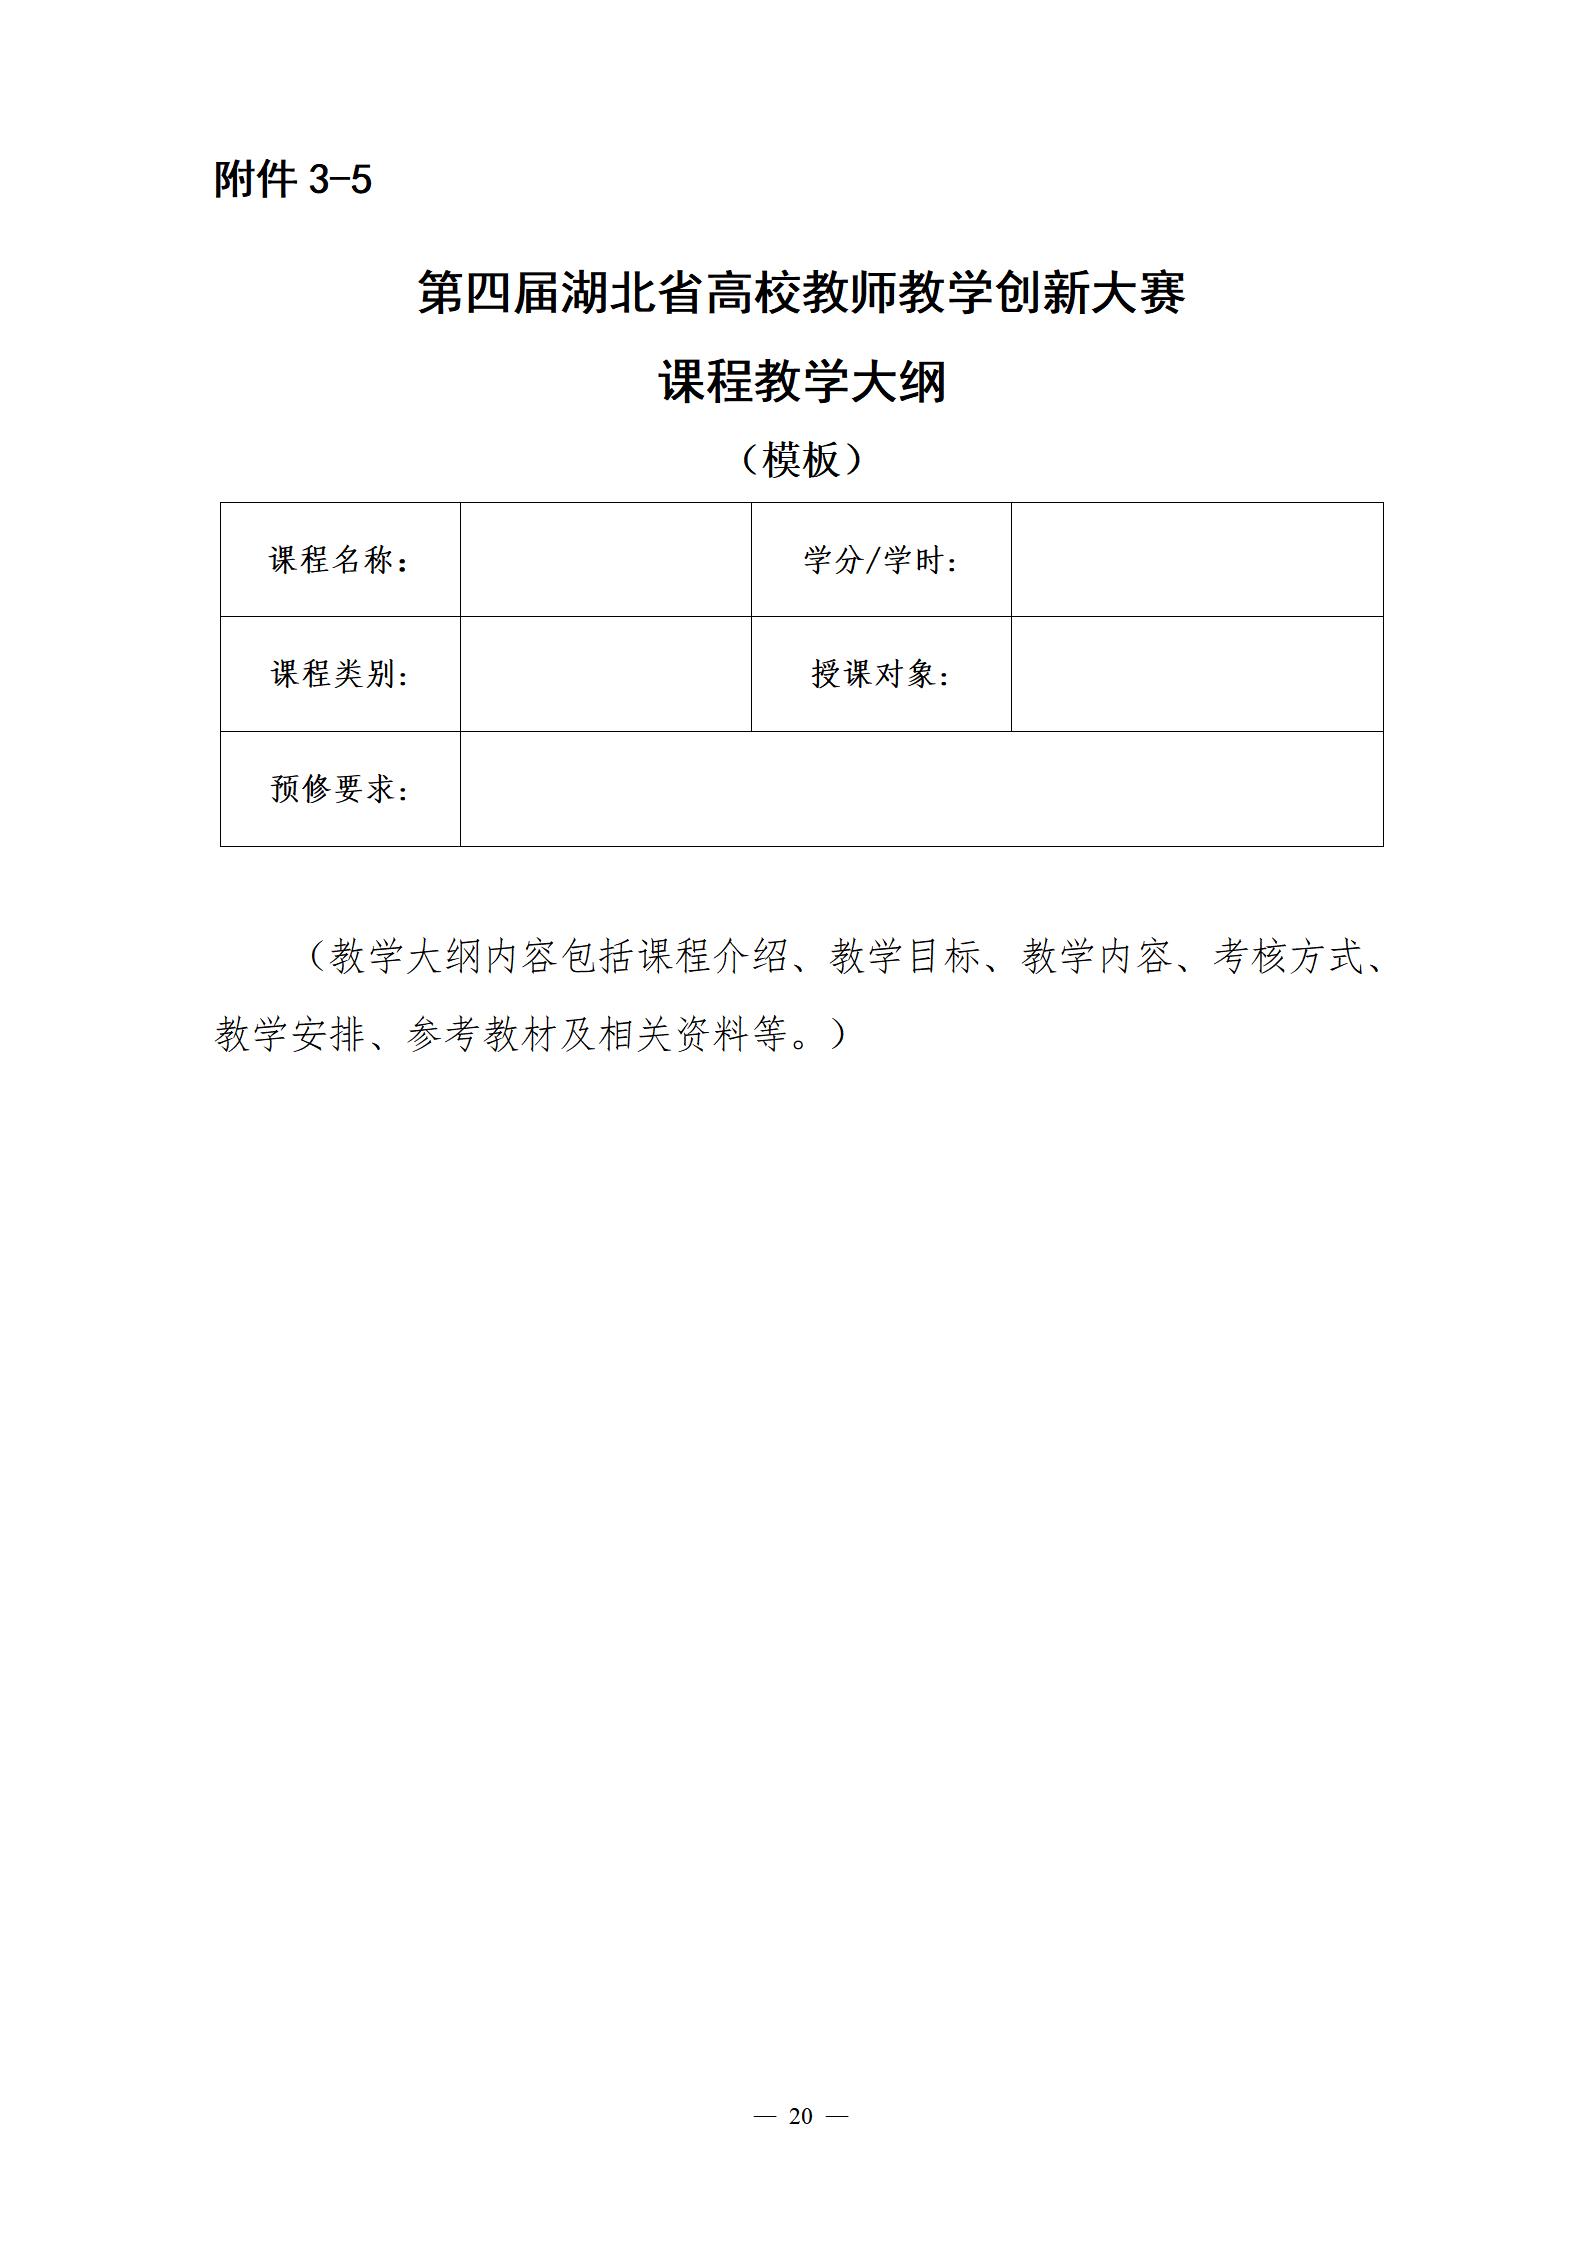 关于举办第四届湖北省高校教师教学创新大赛的通知_20.jpg